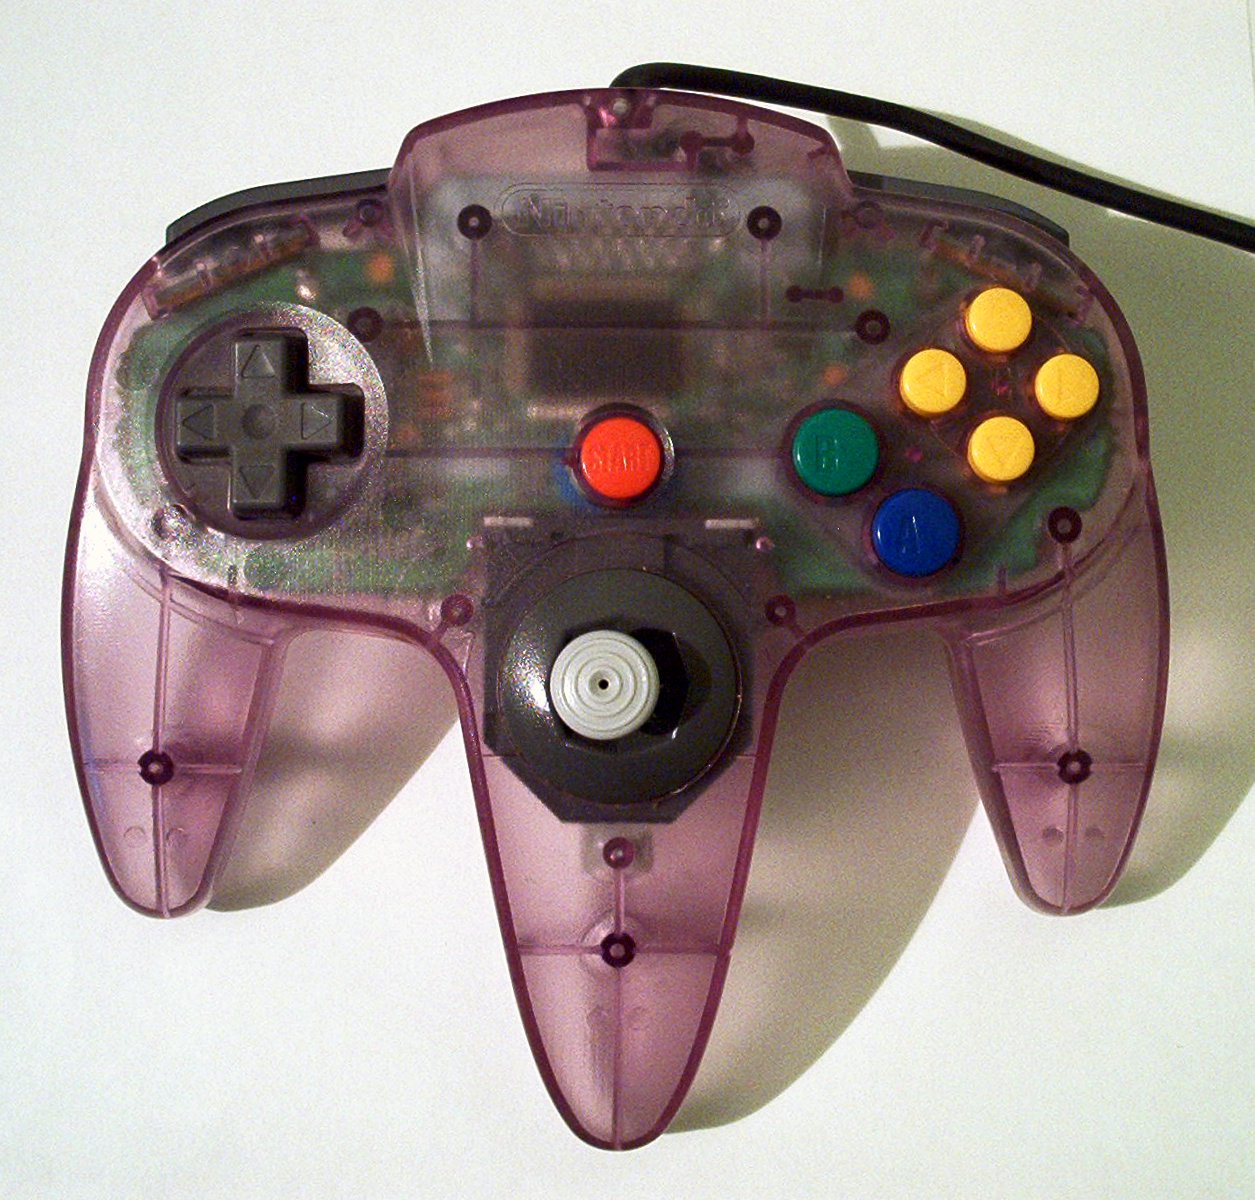 N64-controller-purple.jpg